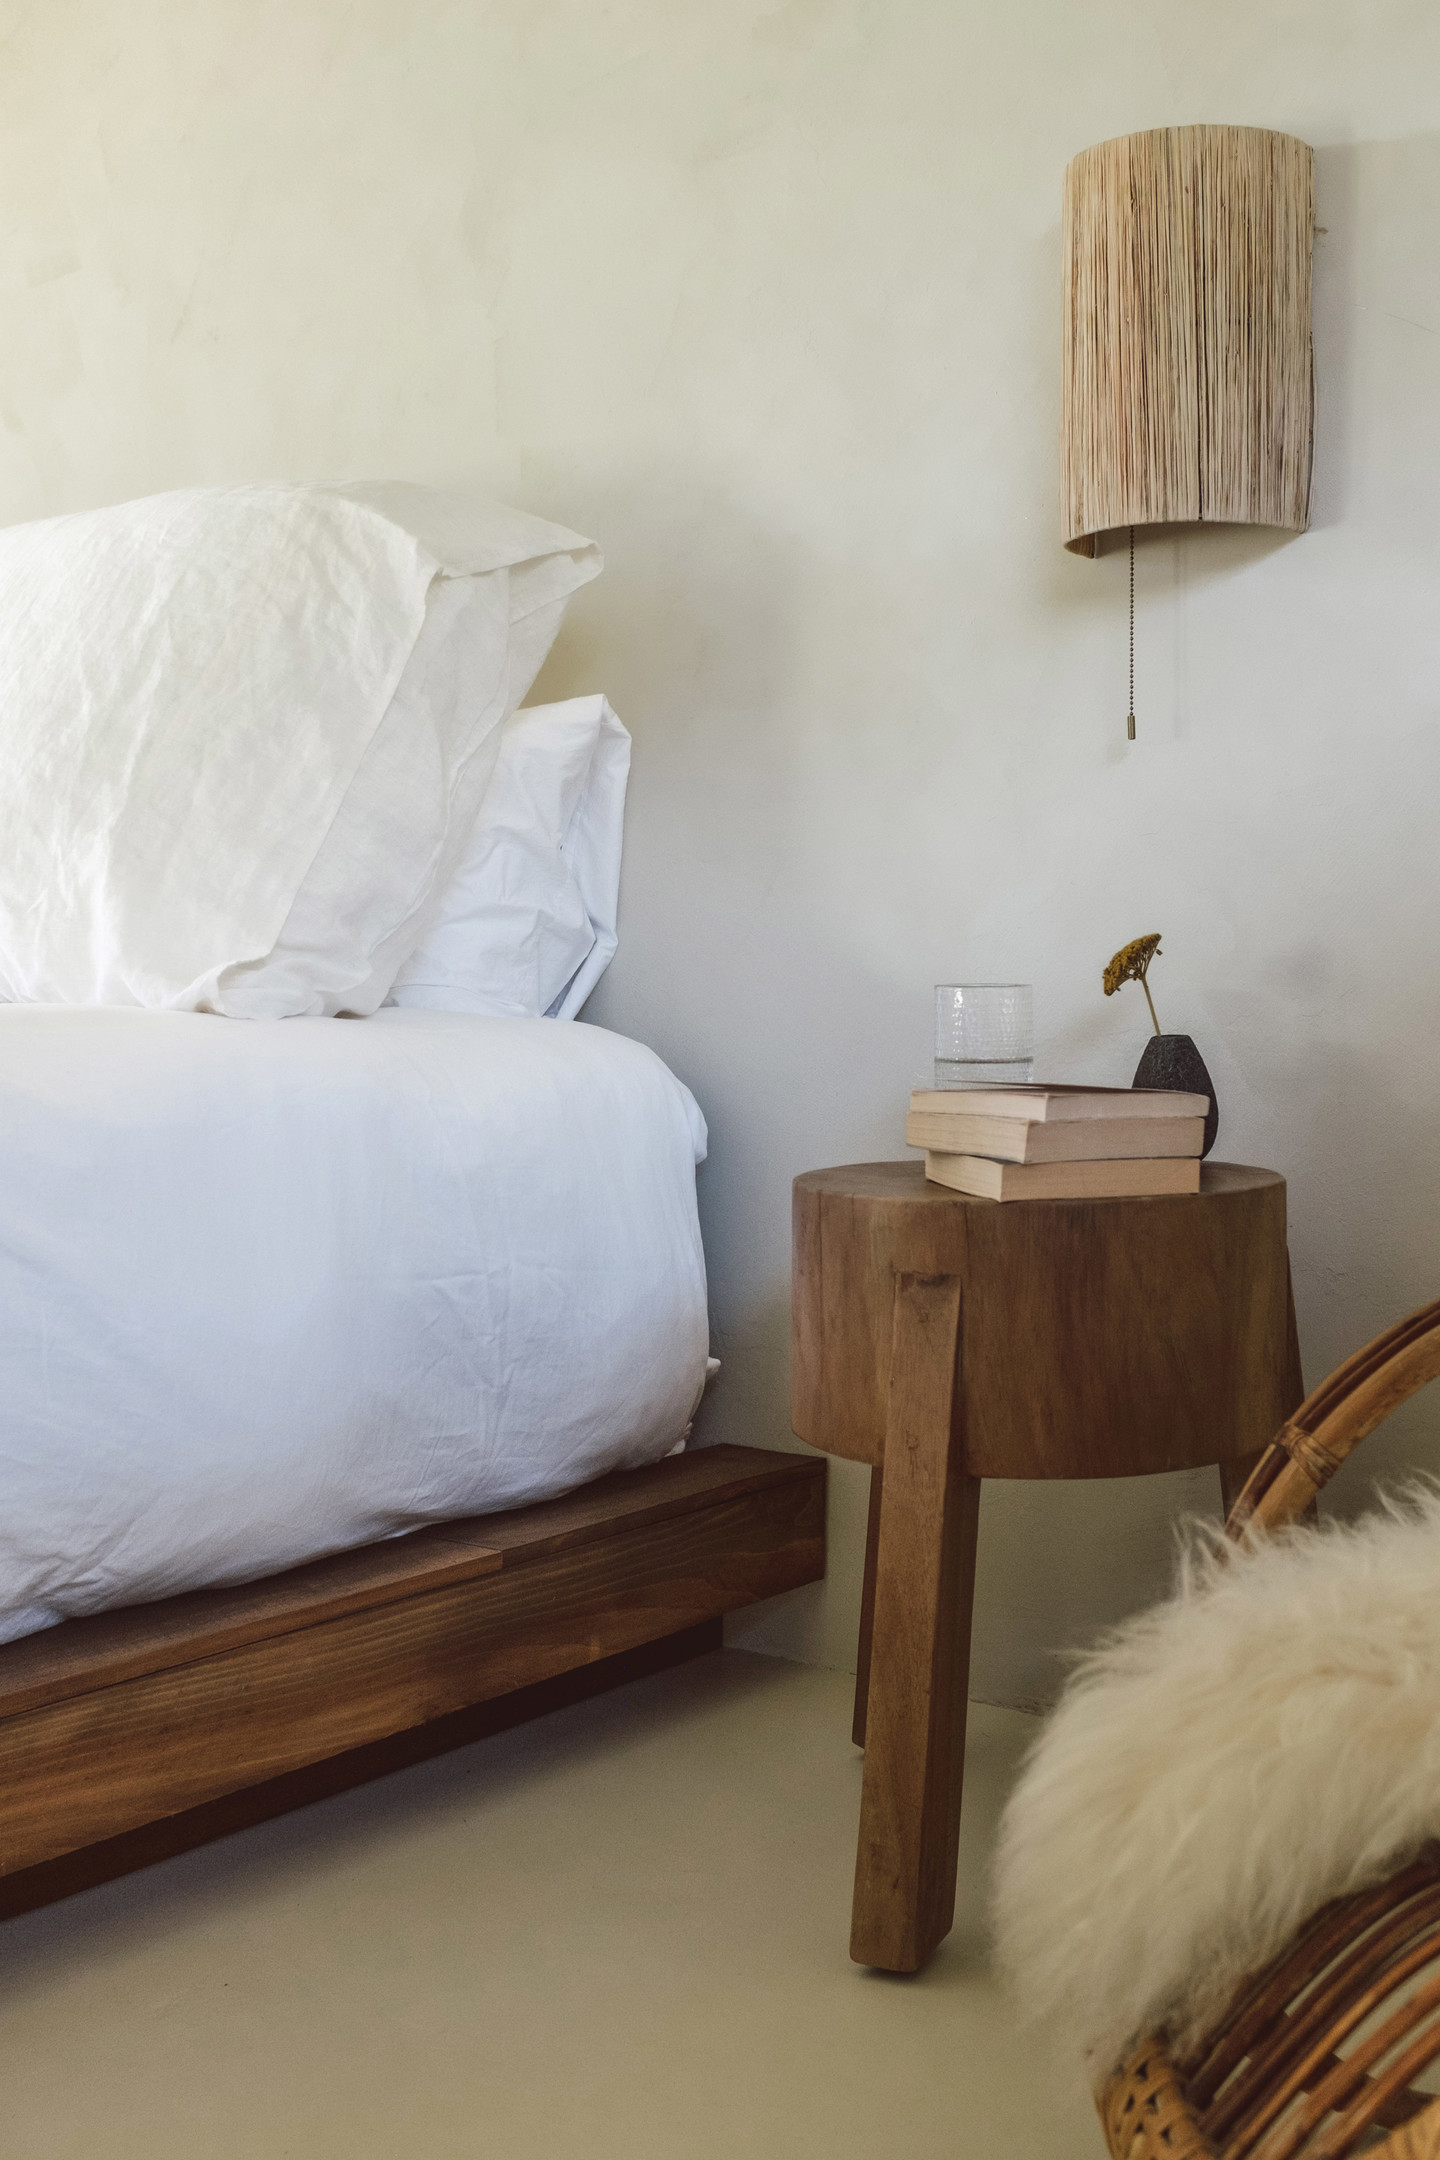 Phòng ngủ dành cho khách với nội thất bằng gỗ và mây tre đan mộc mạc, vẫn là phong cách tối giản đúng chuẩn của người dân xứ mặt trời mọc. Một vài cuốn sách đặt trên táp đầu giường bằng gỗ với đèn gắn tường cung cấp ánh sáng dịu nhẹ.